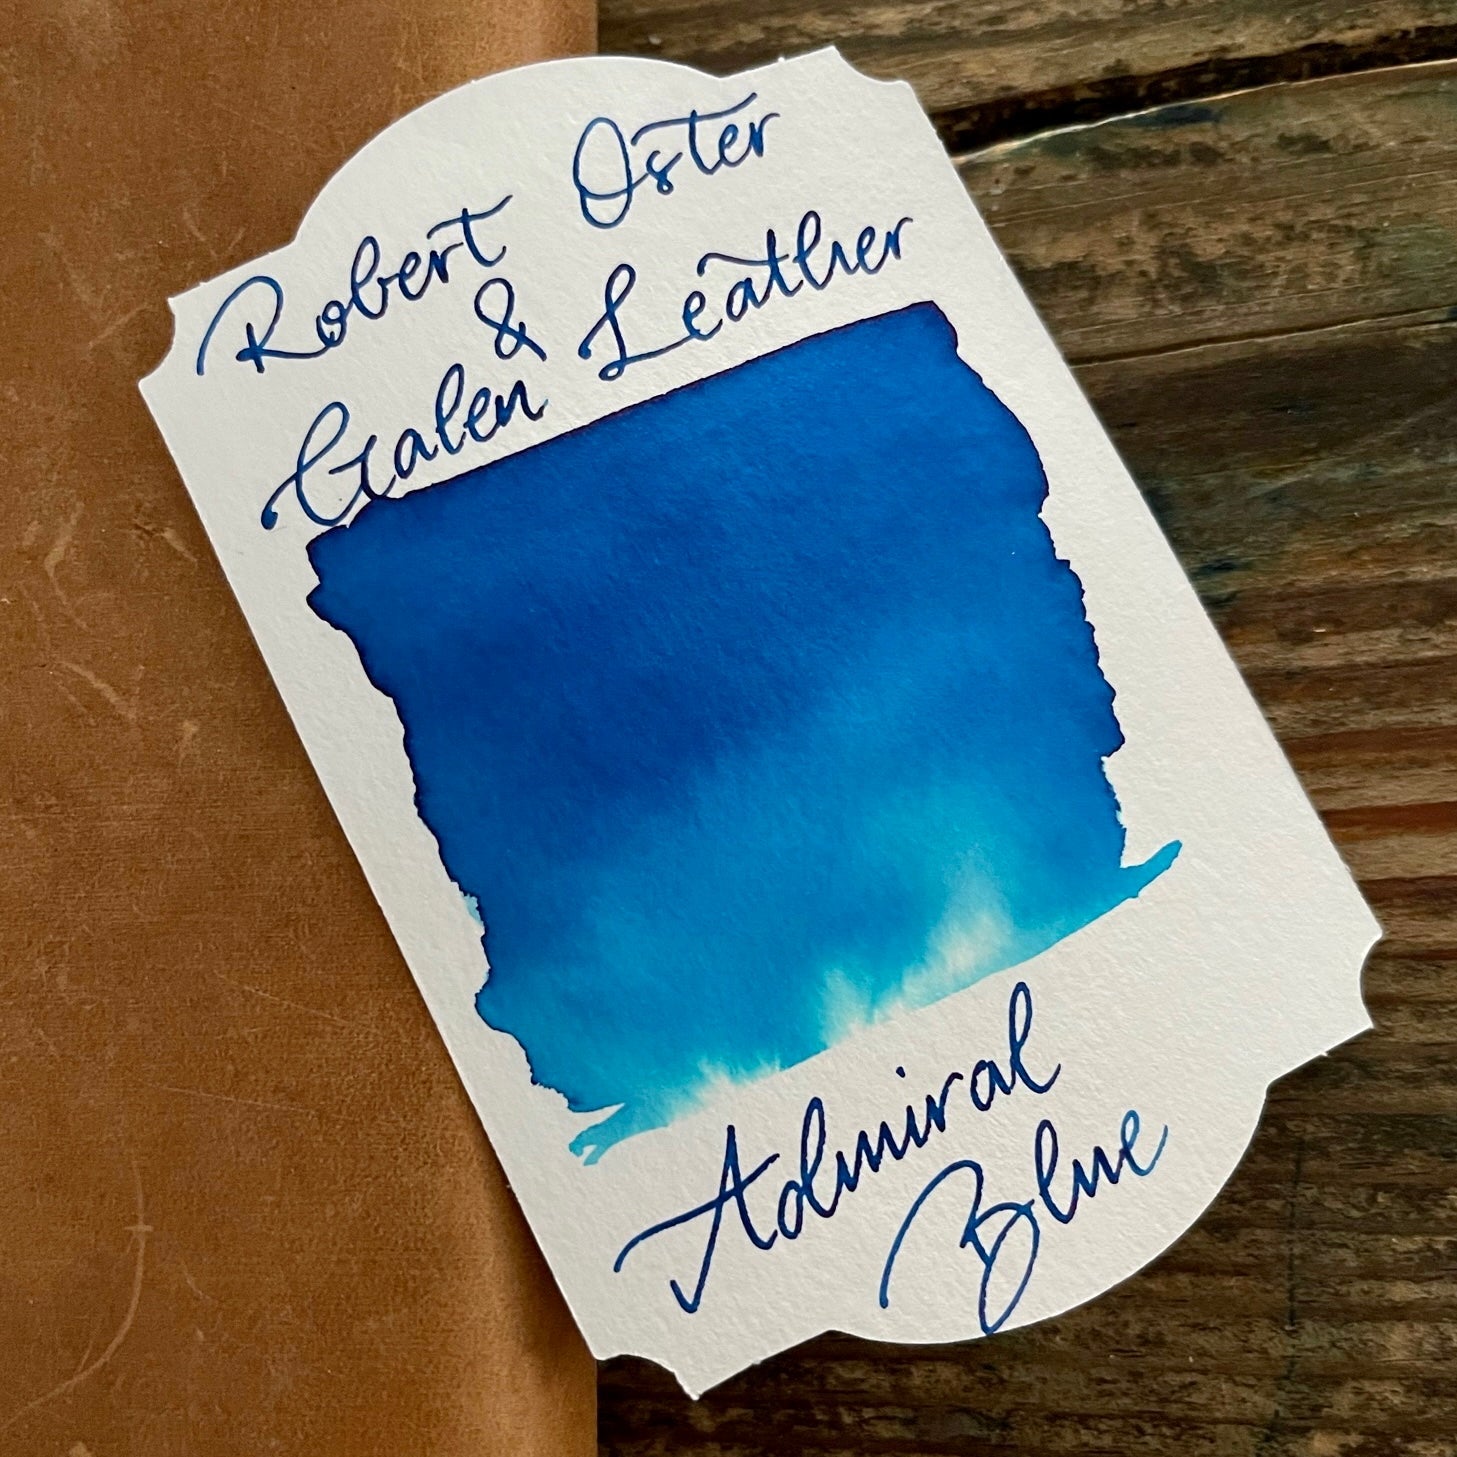 Robert Oster x Galen Admiral Blue Ink